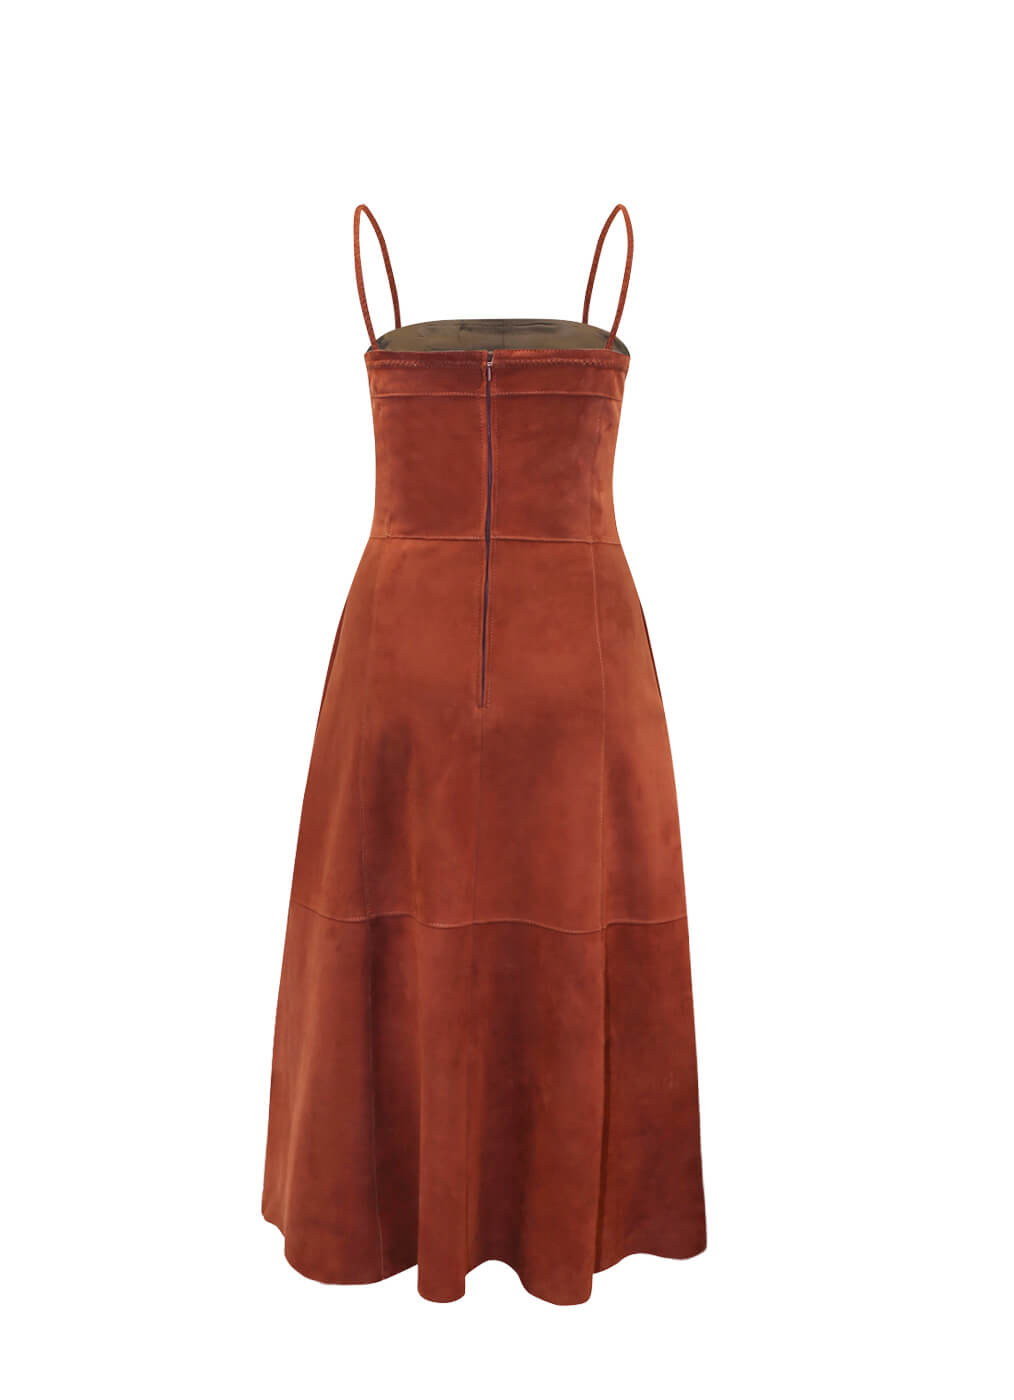 Ziegenleder Kleid “Malibu Strap”, rusted red